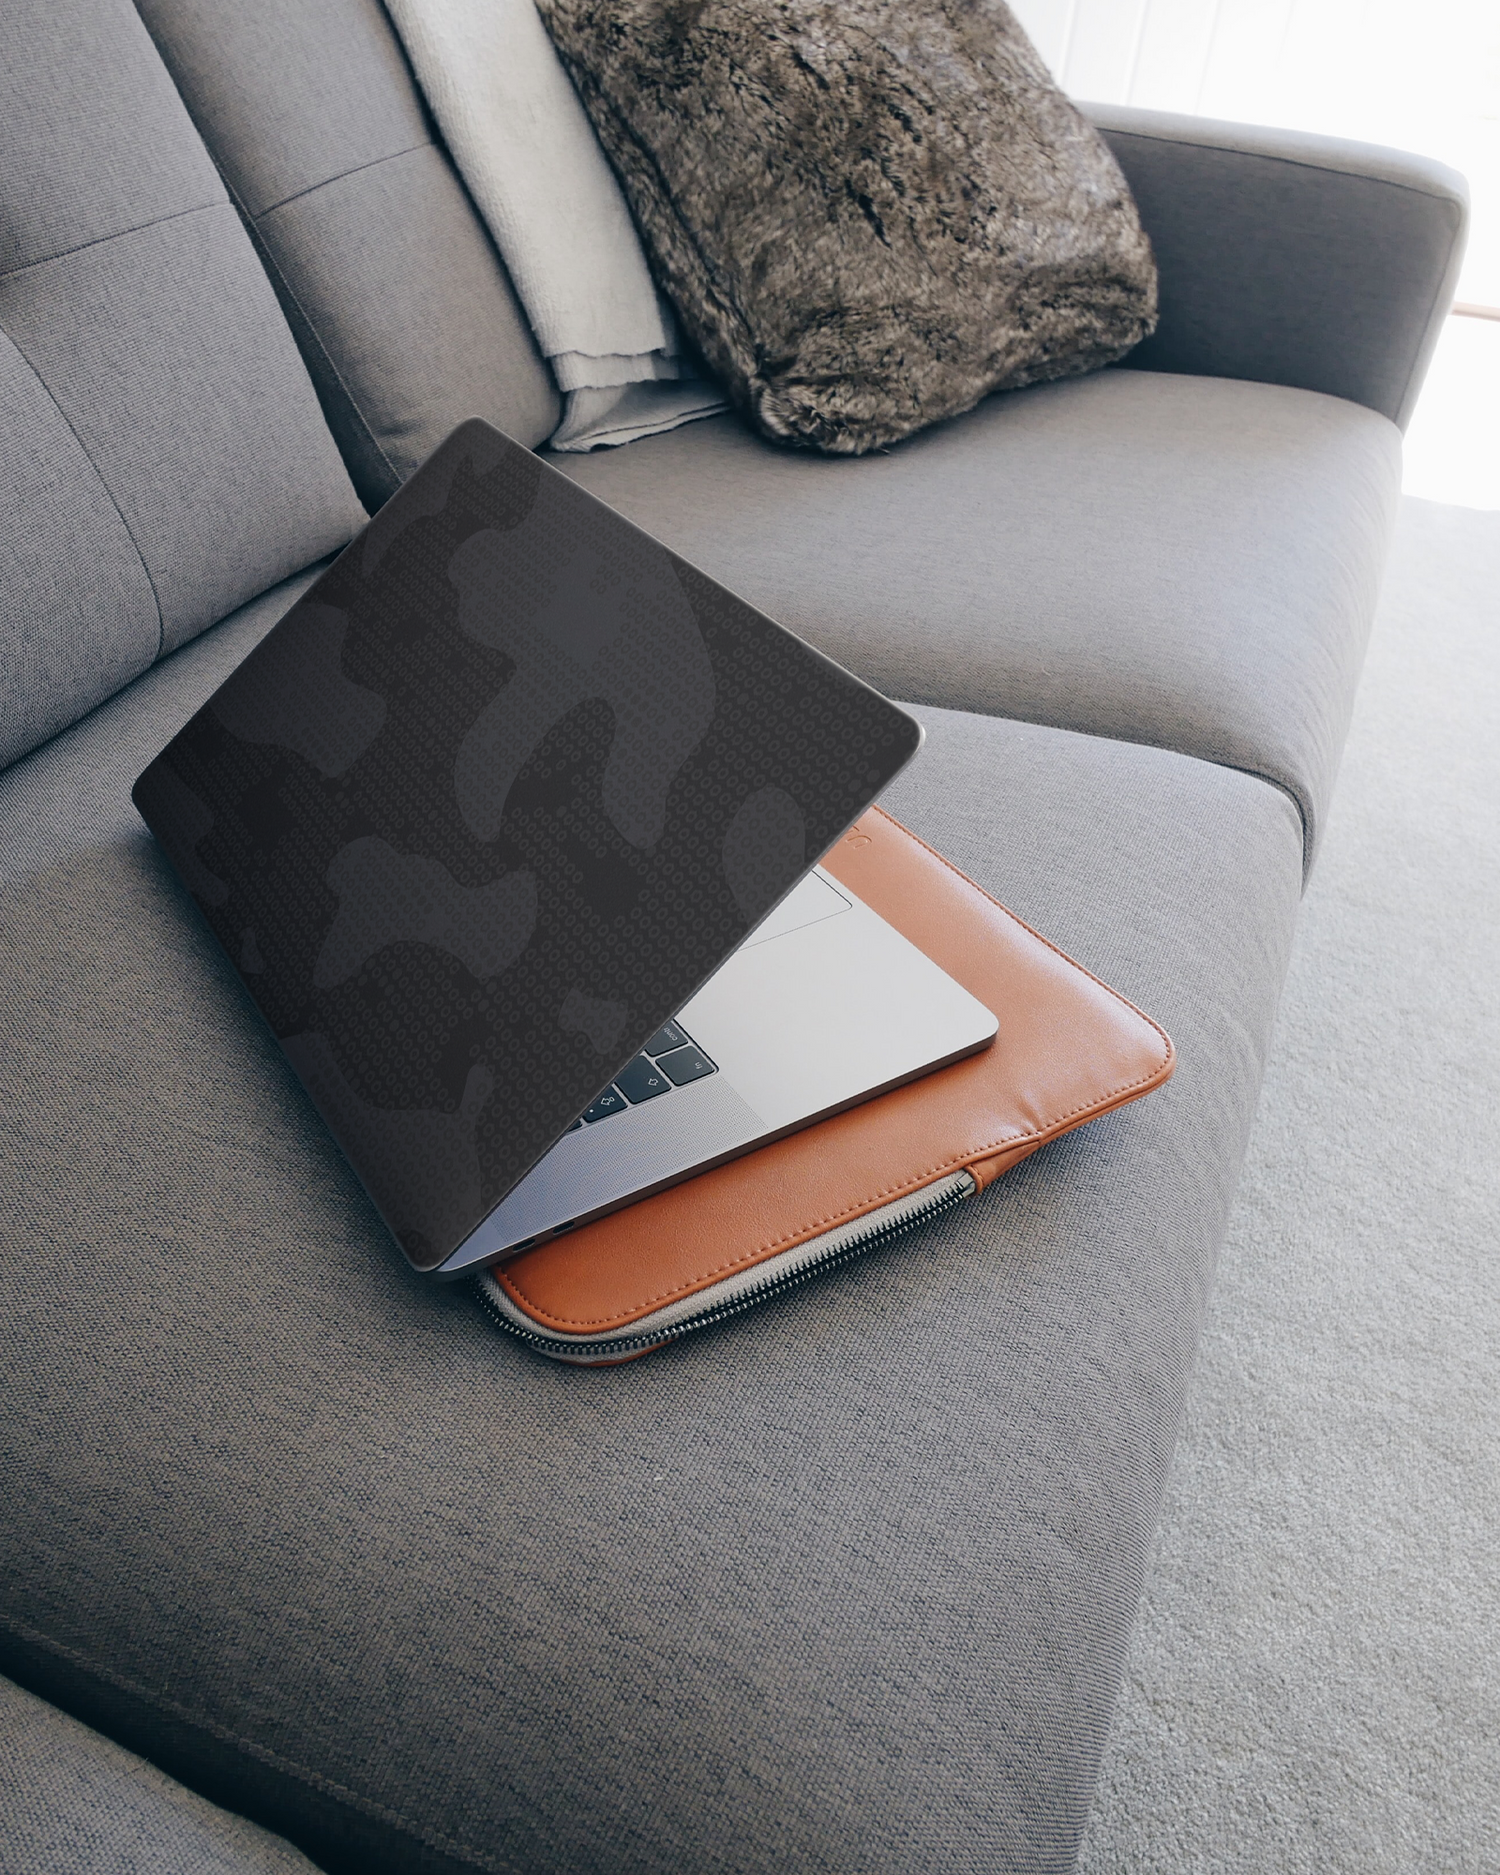 Spec Ops Dark Laptop Aufkleber für 15 Zoll Apple MacBooks auf dem Sofa